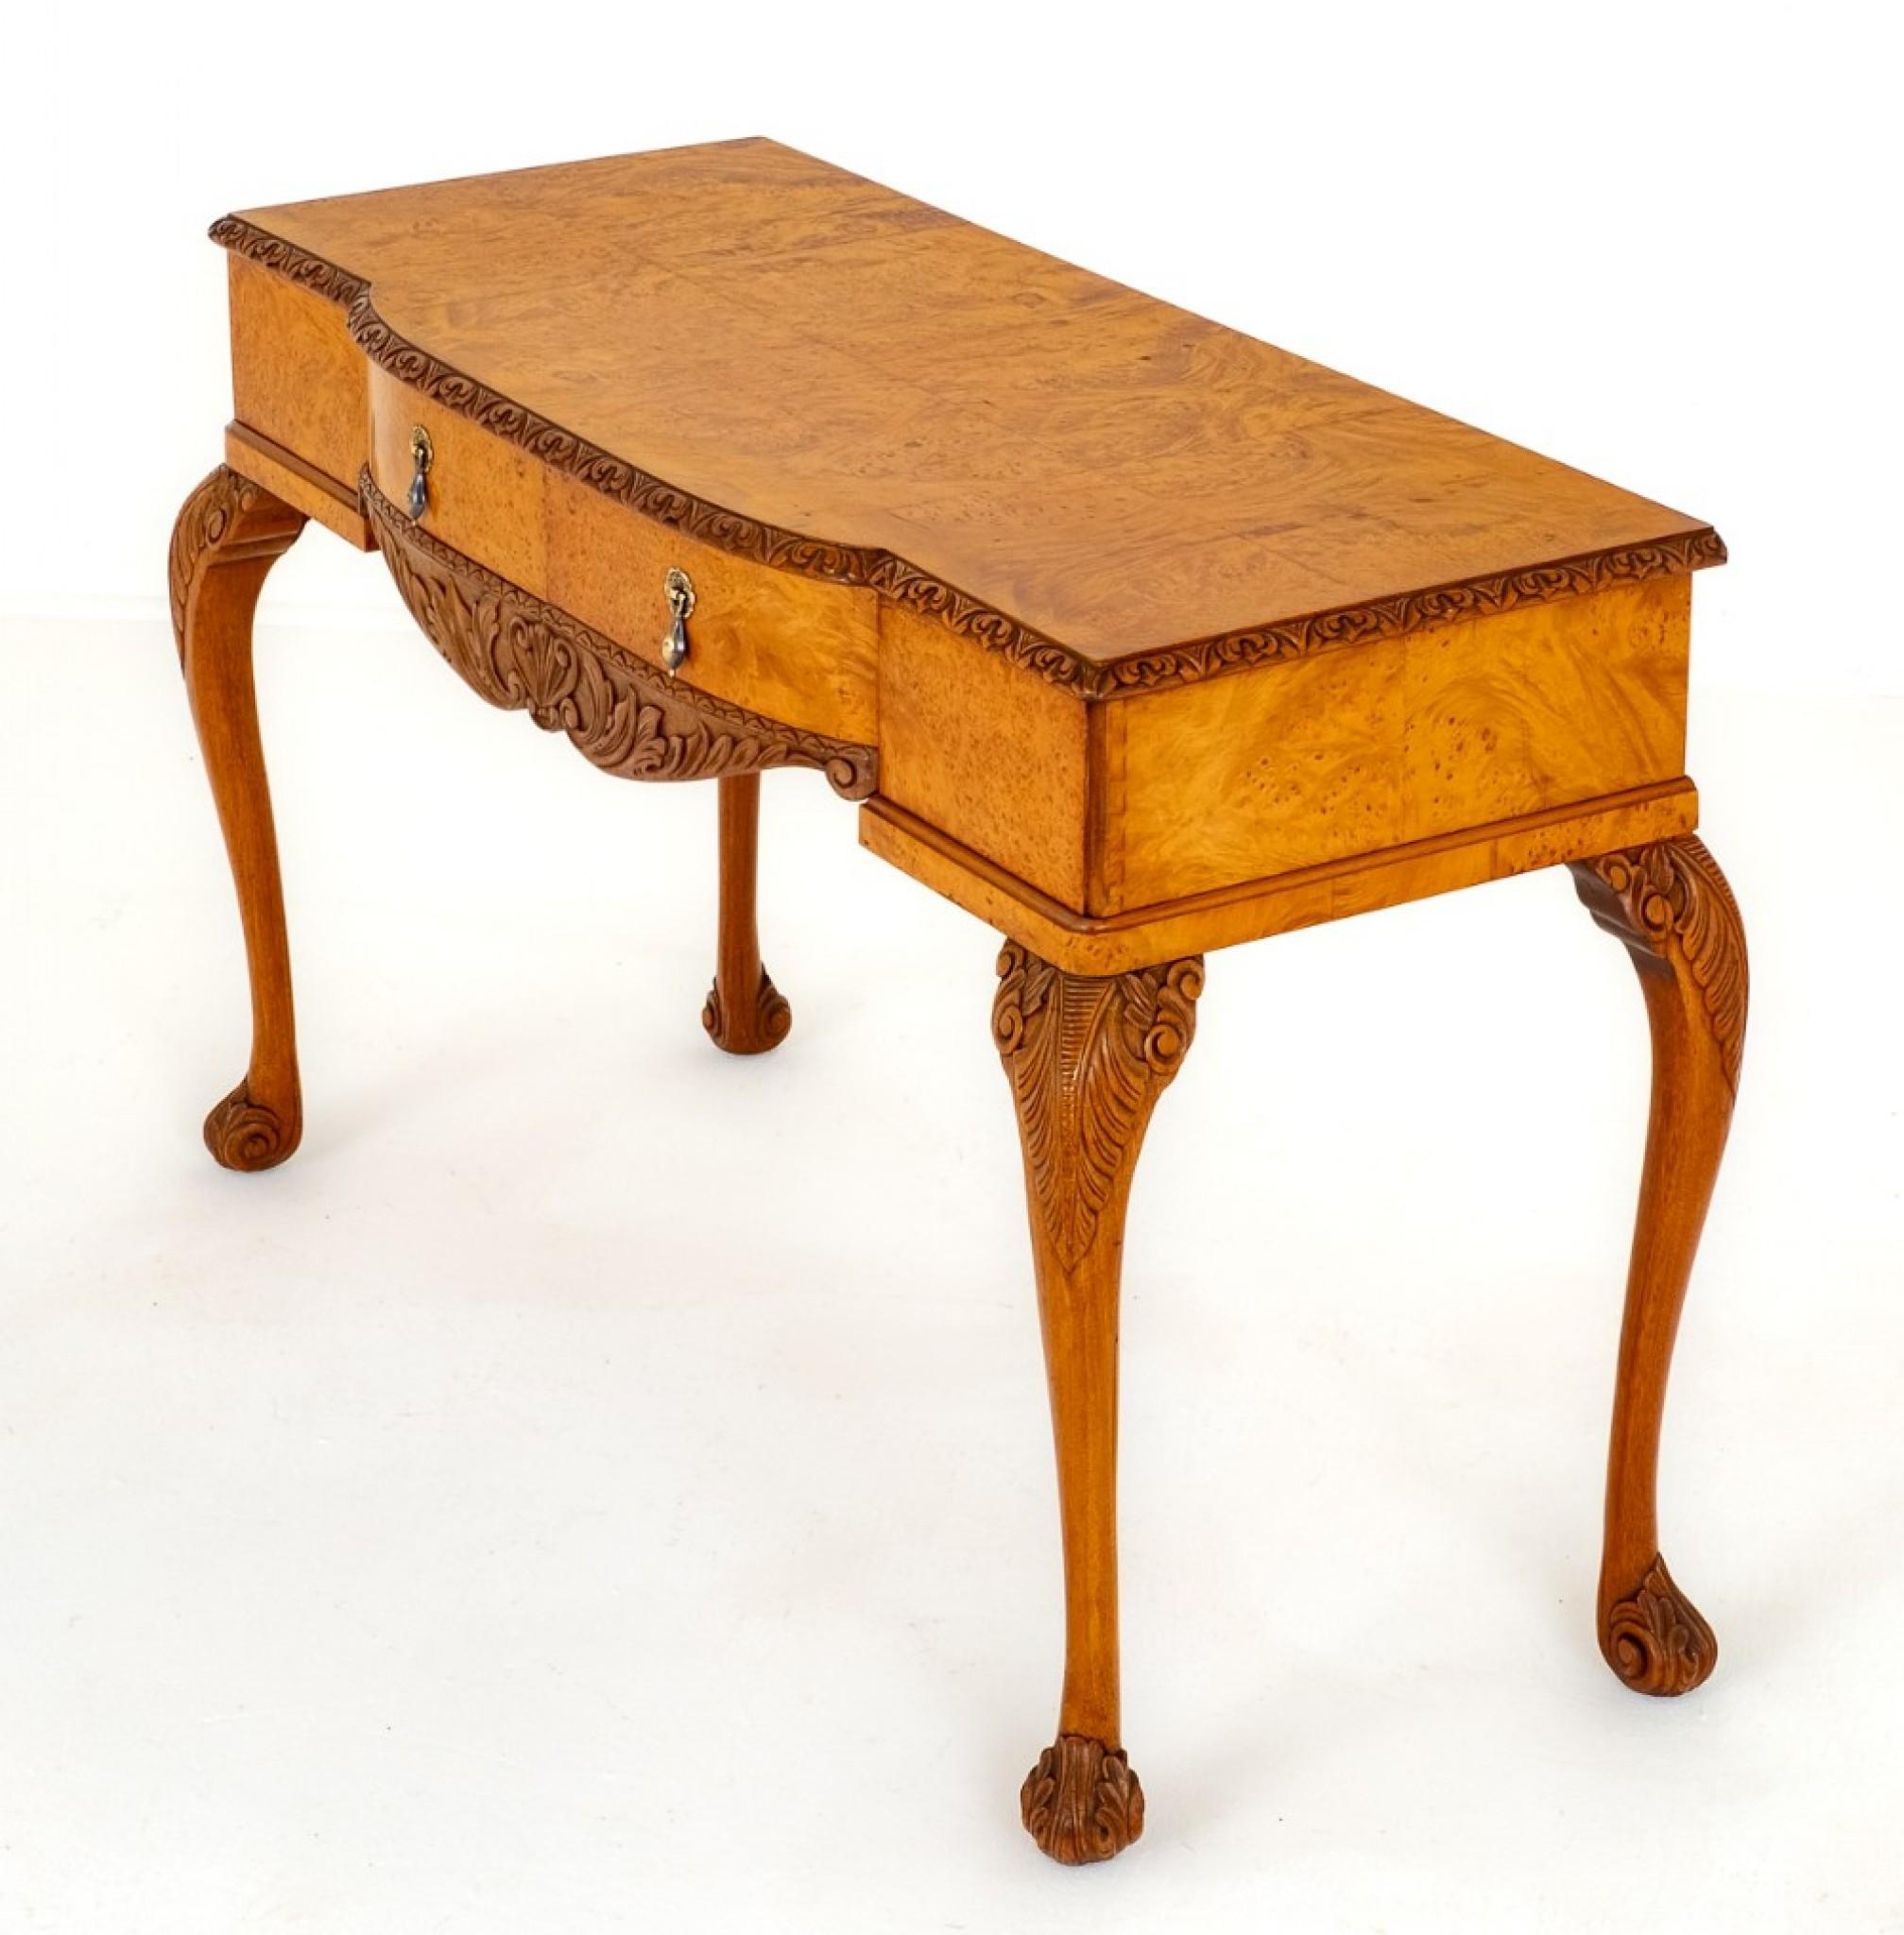 Nous avons ici une table d'appoint en noyer de qualité, de style Queen Anne.
Vers 1930
Pieds cabriole avec genoux et pieds sculptés.
La table comporte deux tiroirs en acajou et en baïze, avec une frise façonnée et sculptée.
Le plateau de la table